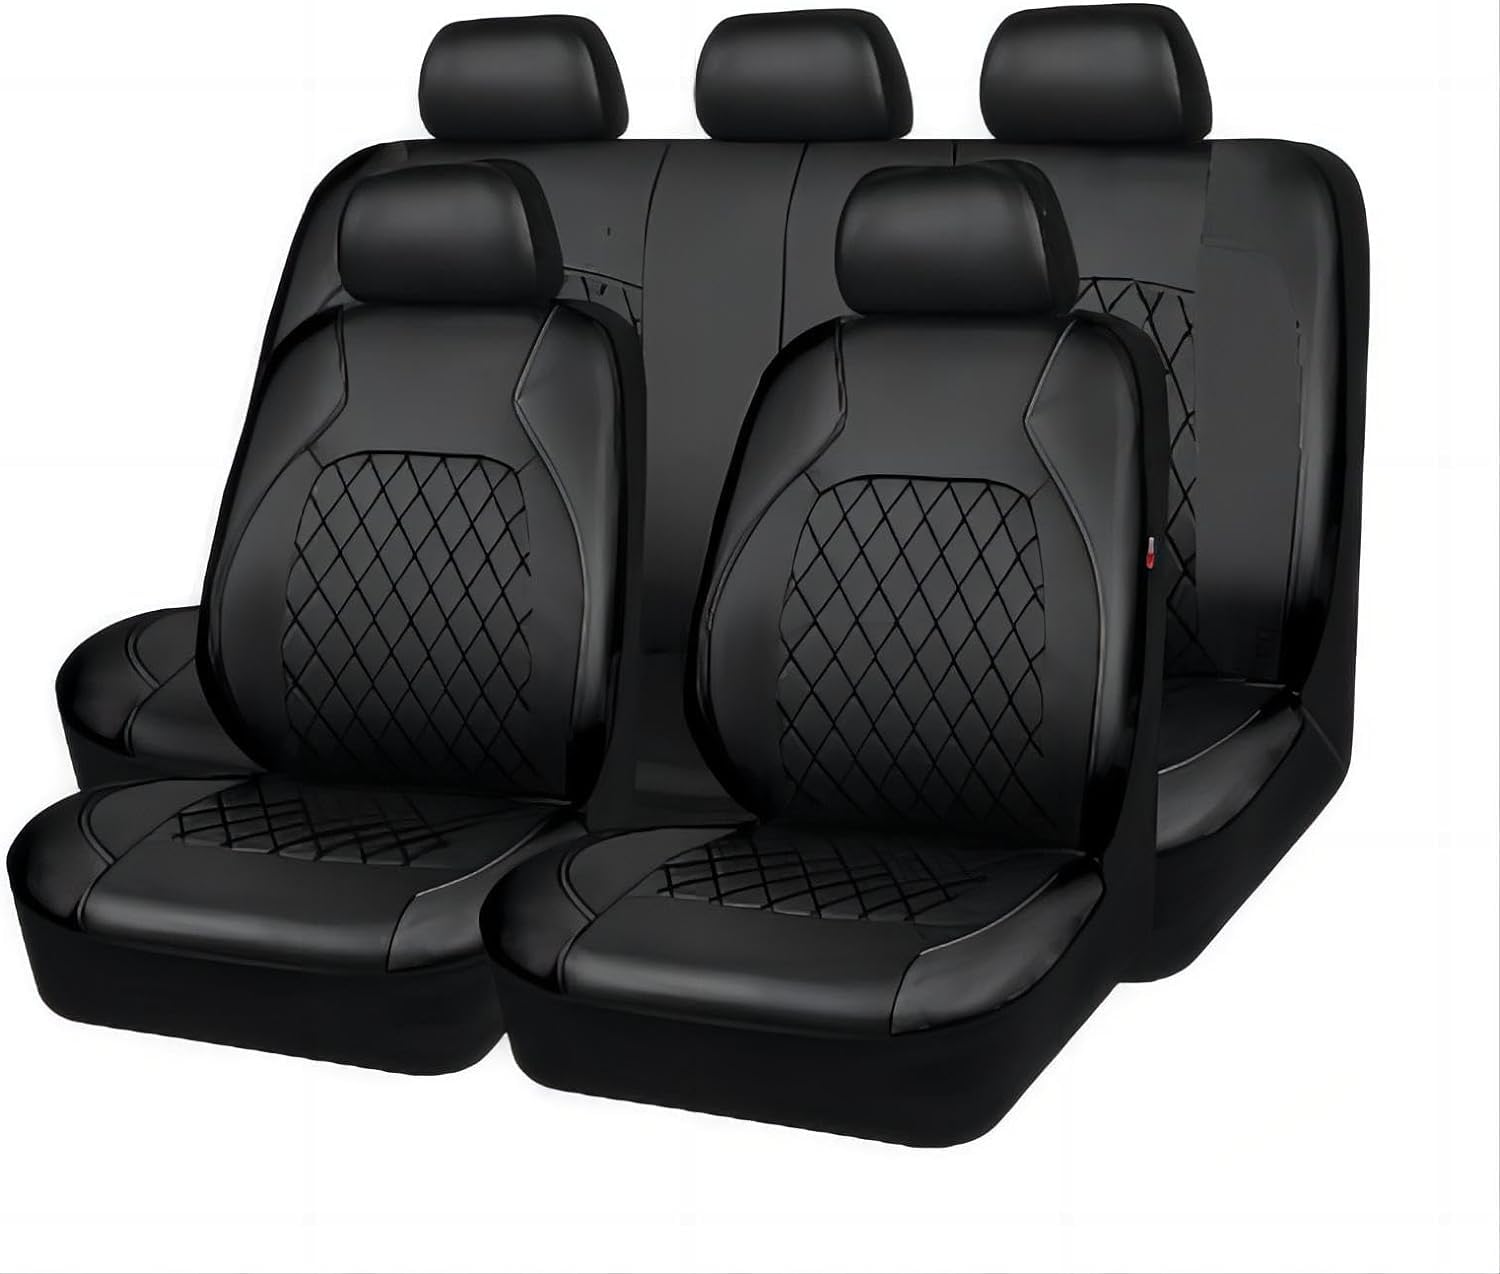 DAYKET Auto-Sitzbezug für Toyota Landcruiser (2017-2018), 9-teiliges Set Sitzbezug Komplett-Set, wasserdichte Autositzschoner Leder,Black von DAYKET